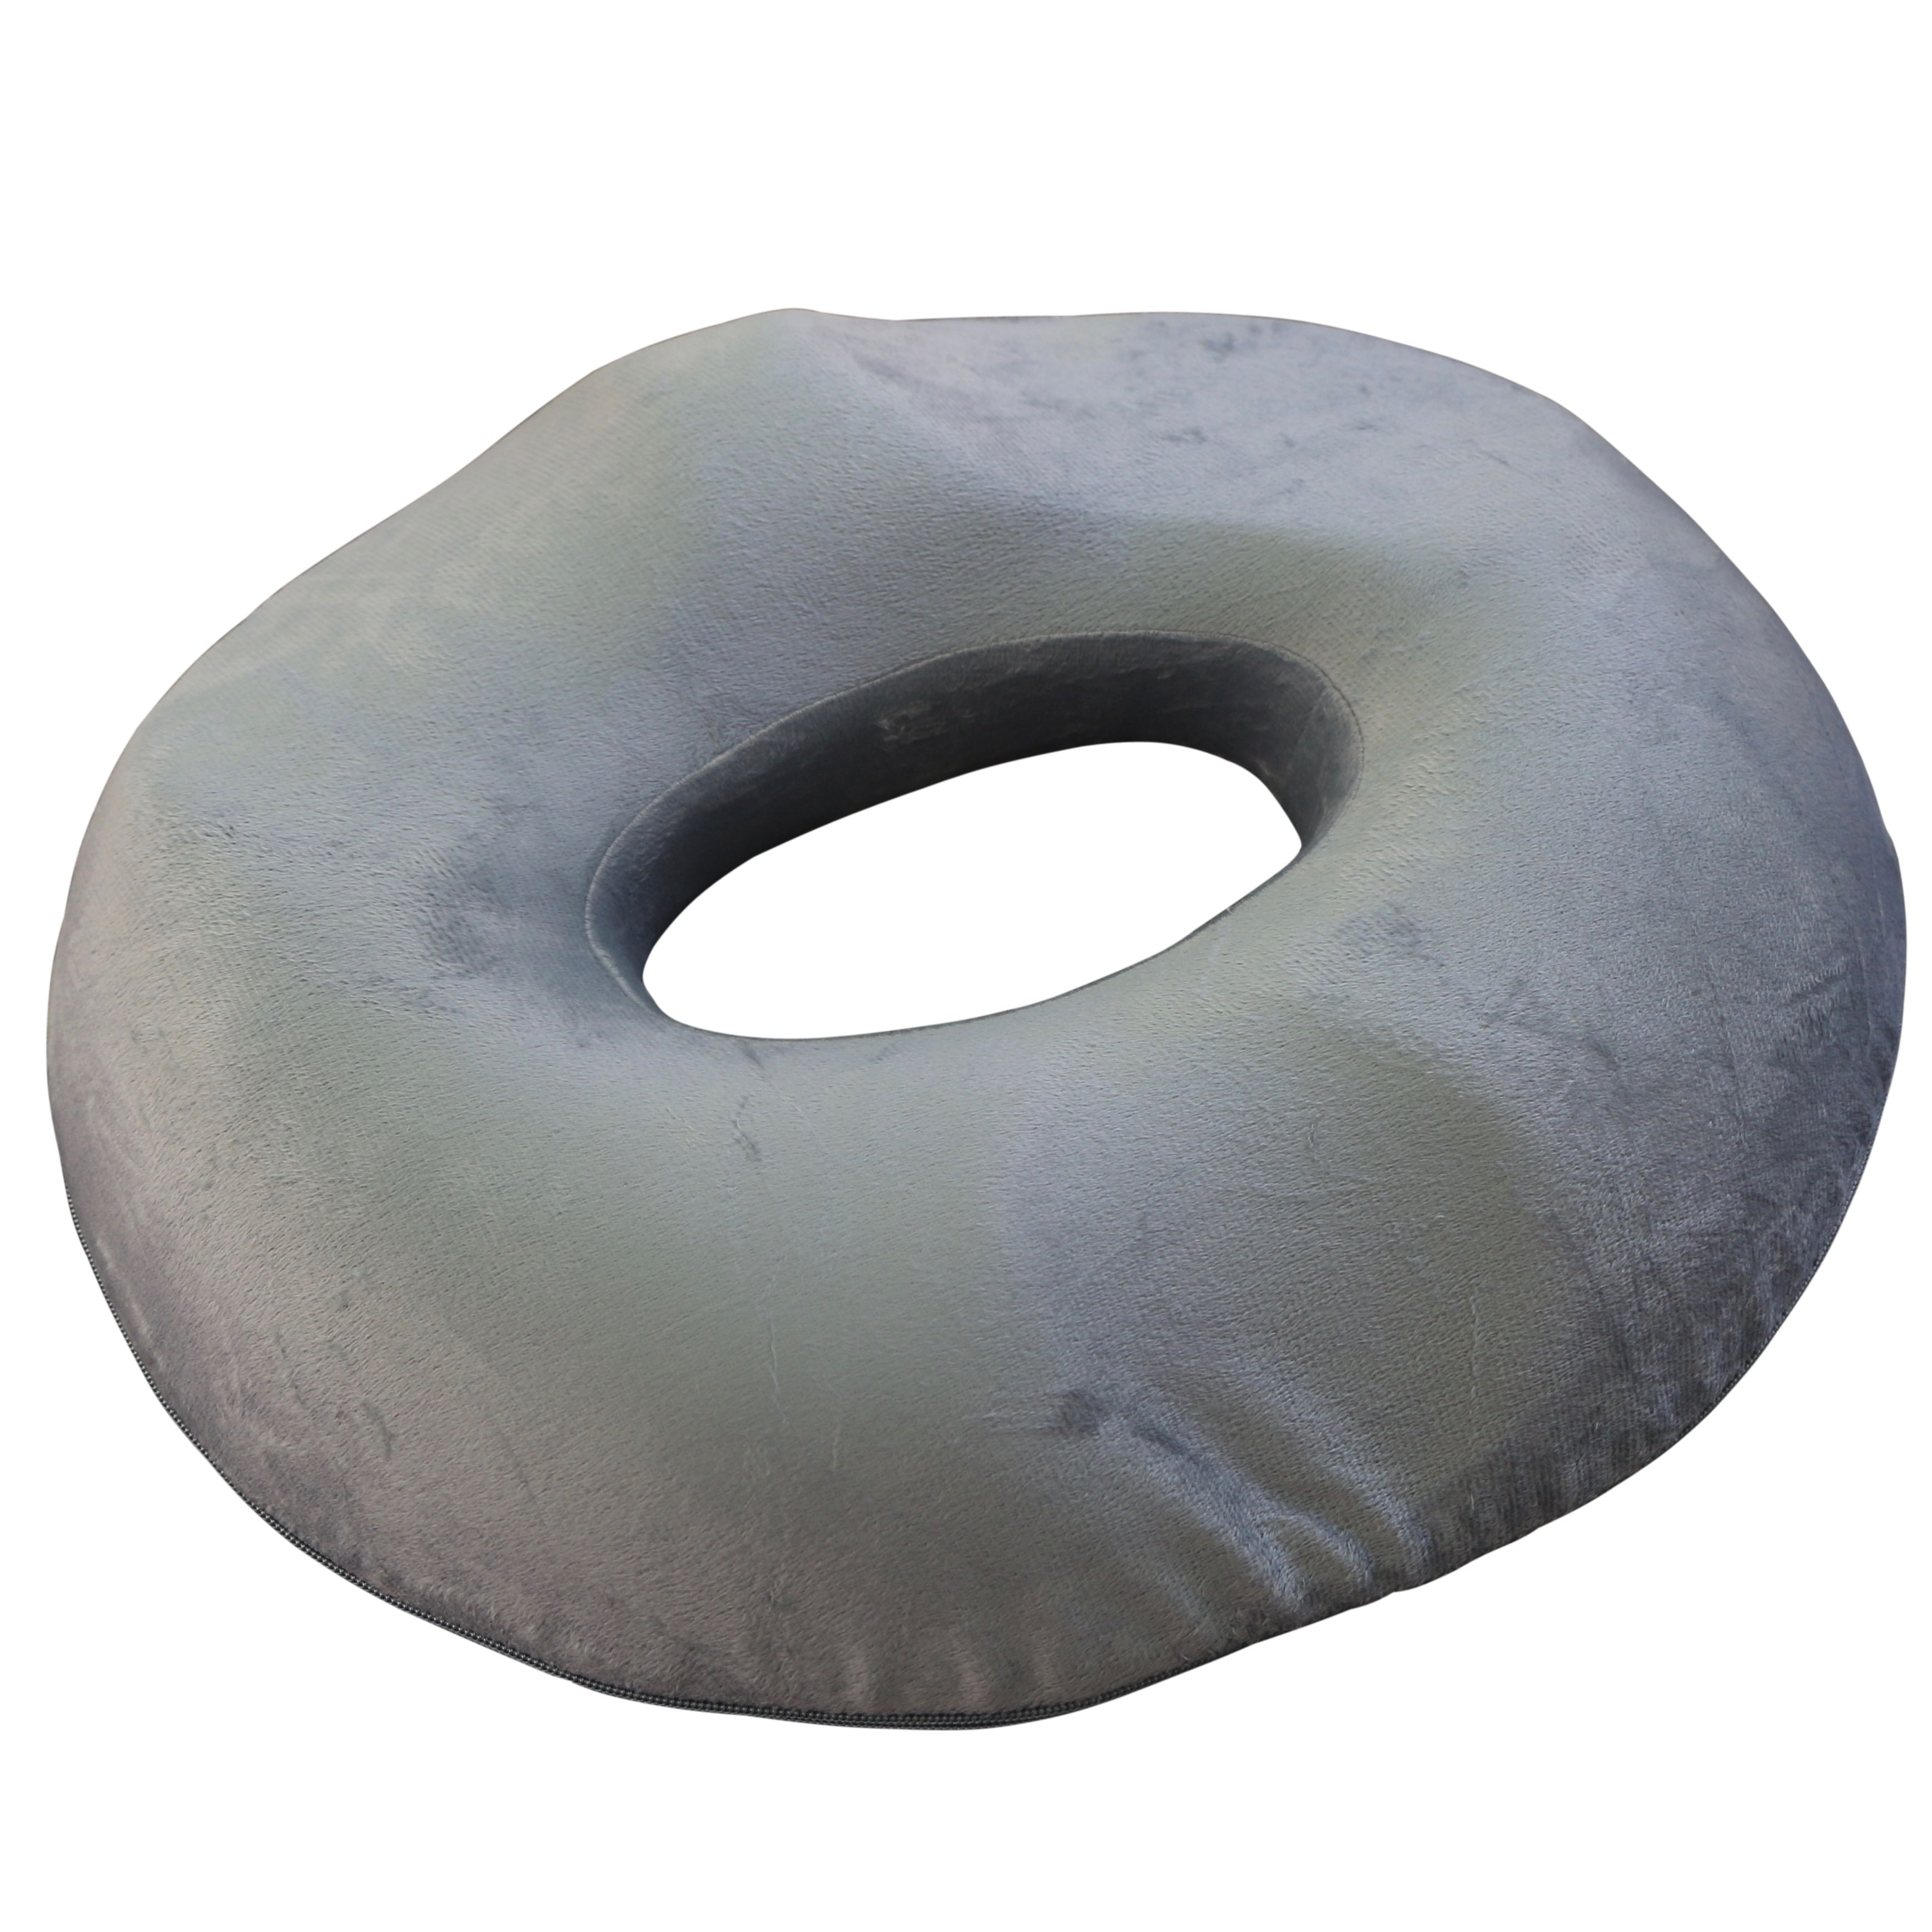 rite aid donut pillow